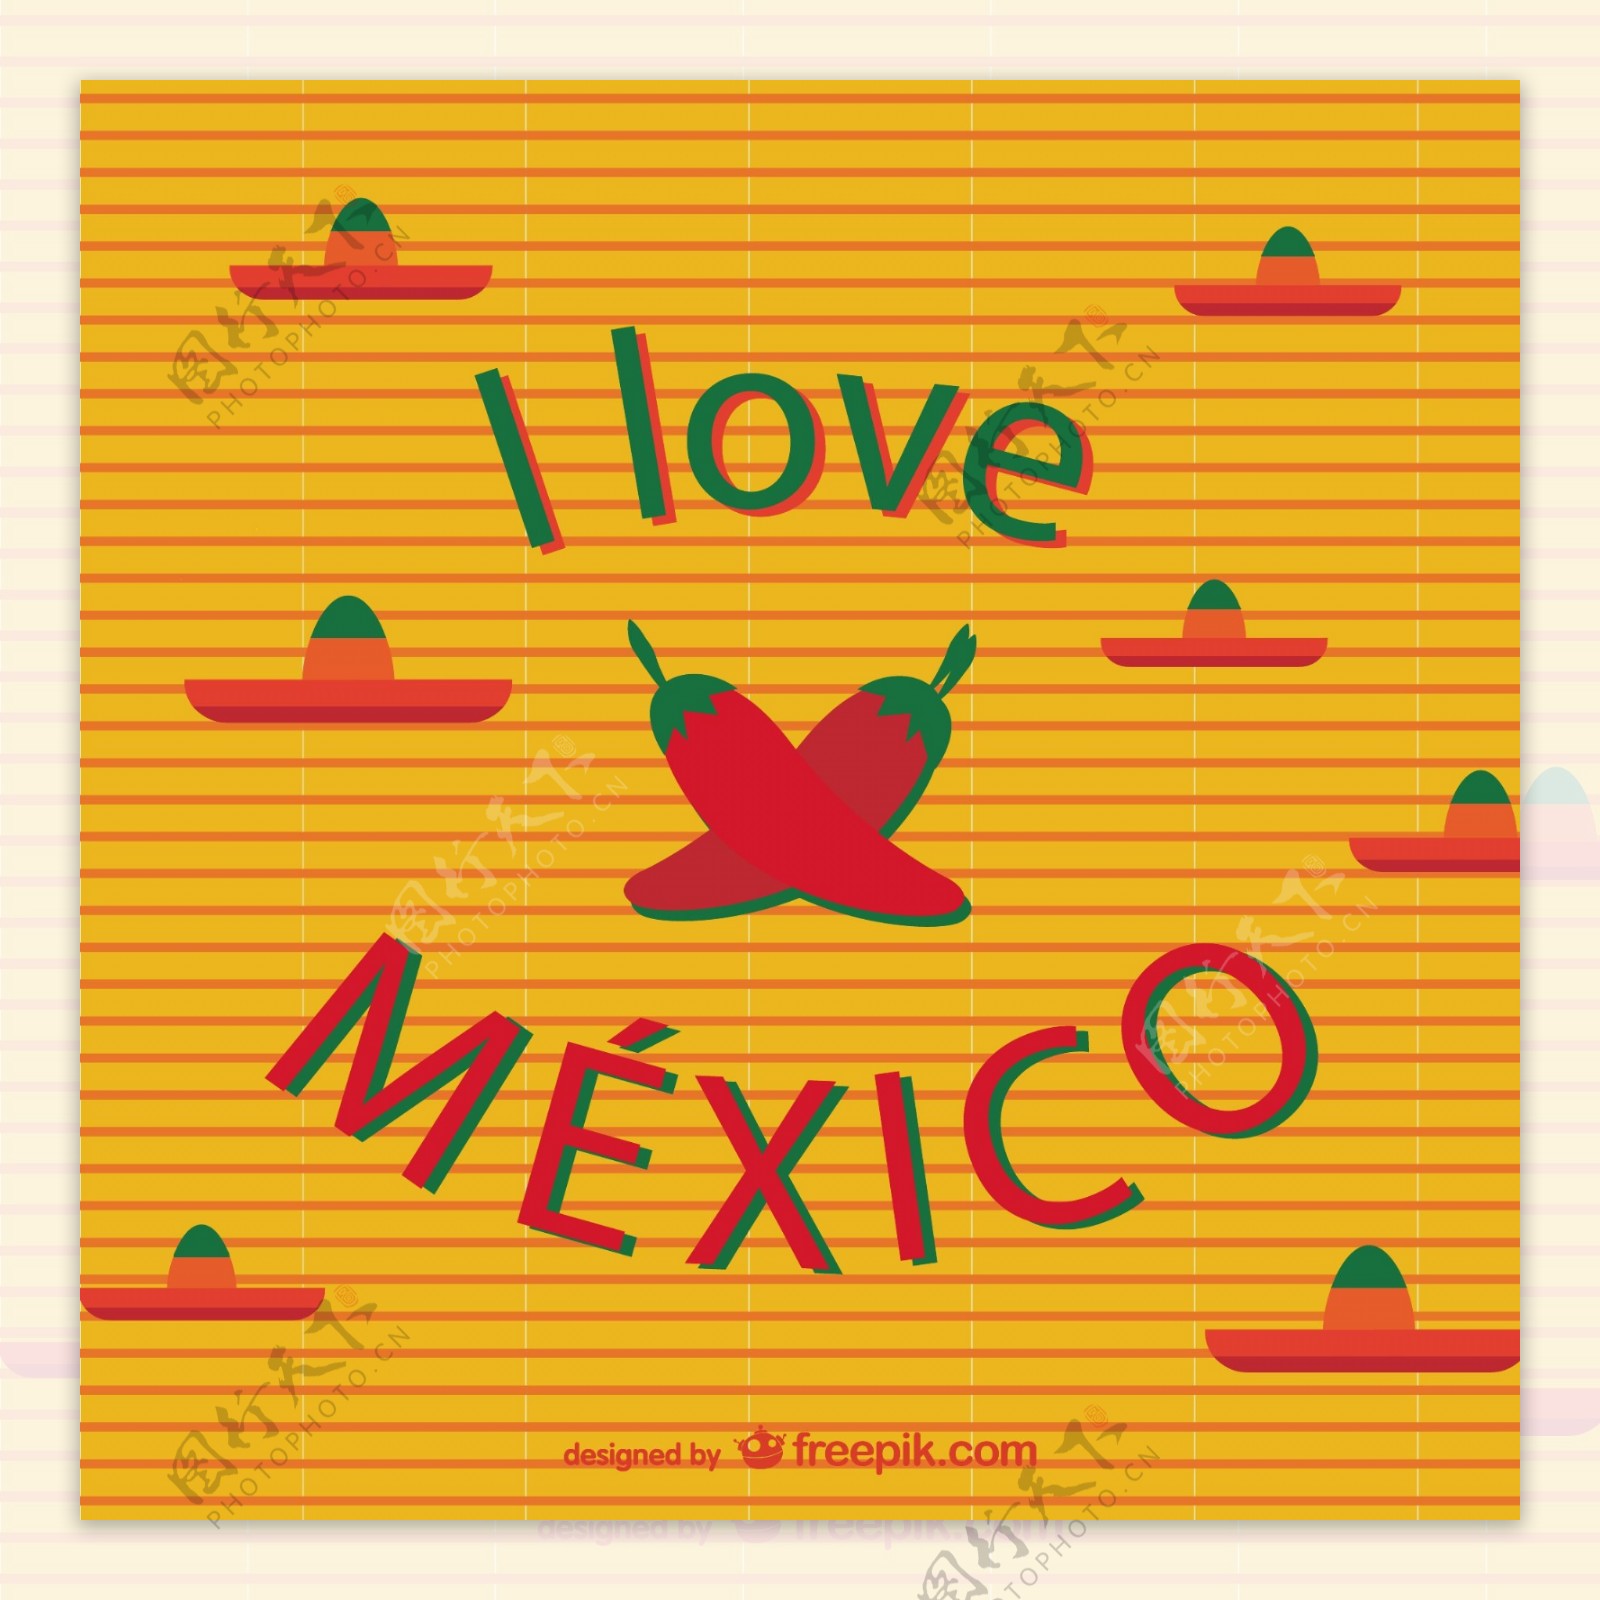 我爱墨西哥向量